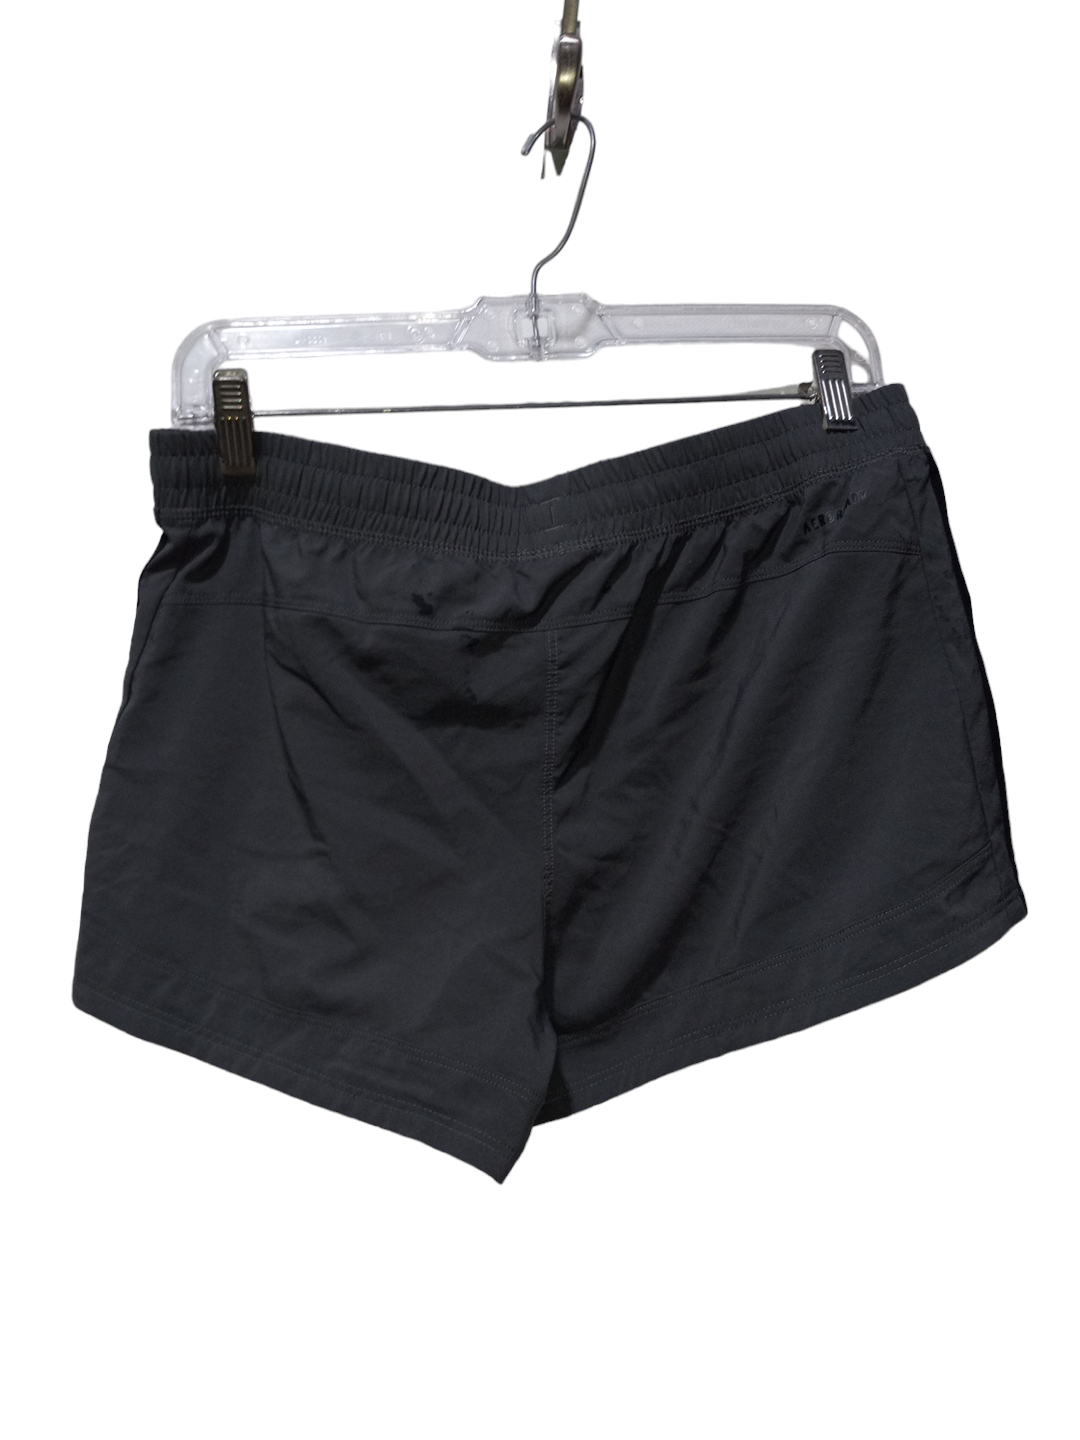 Black & Grey Athletic Shorts Adidas, Size M